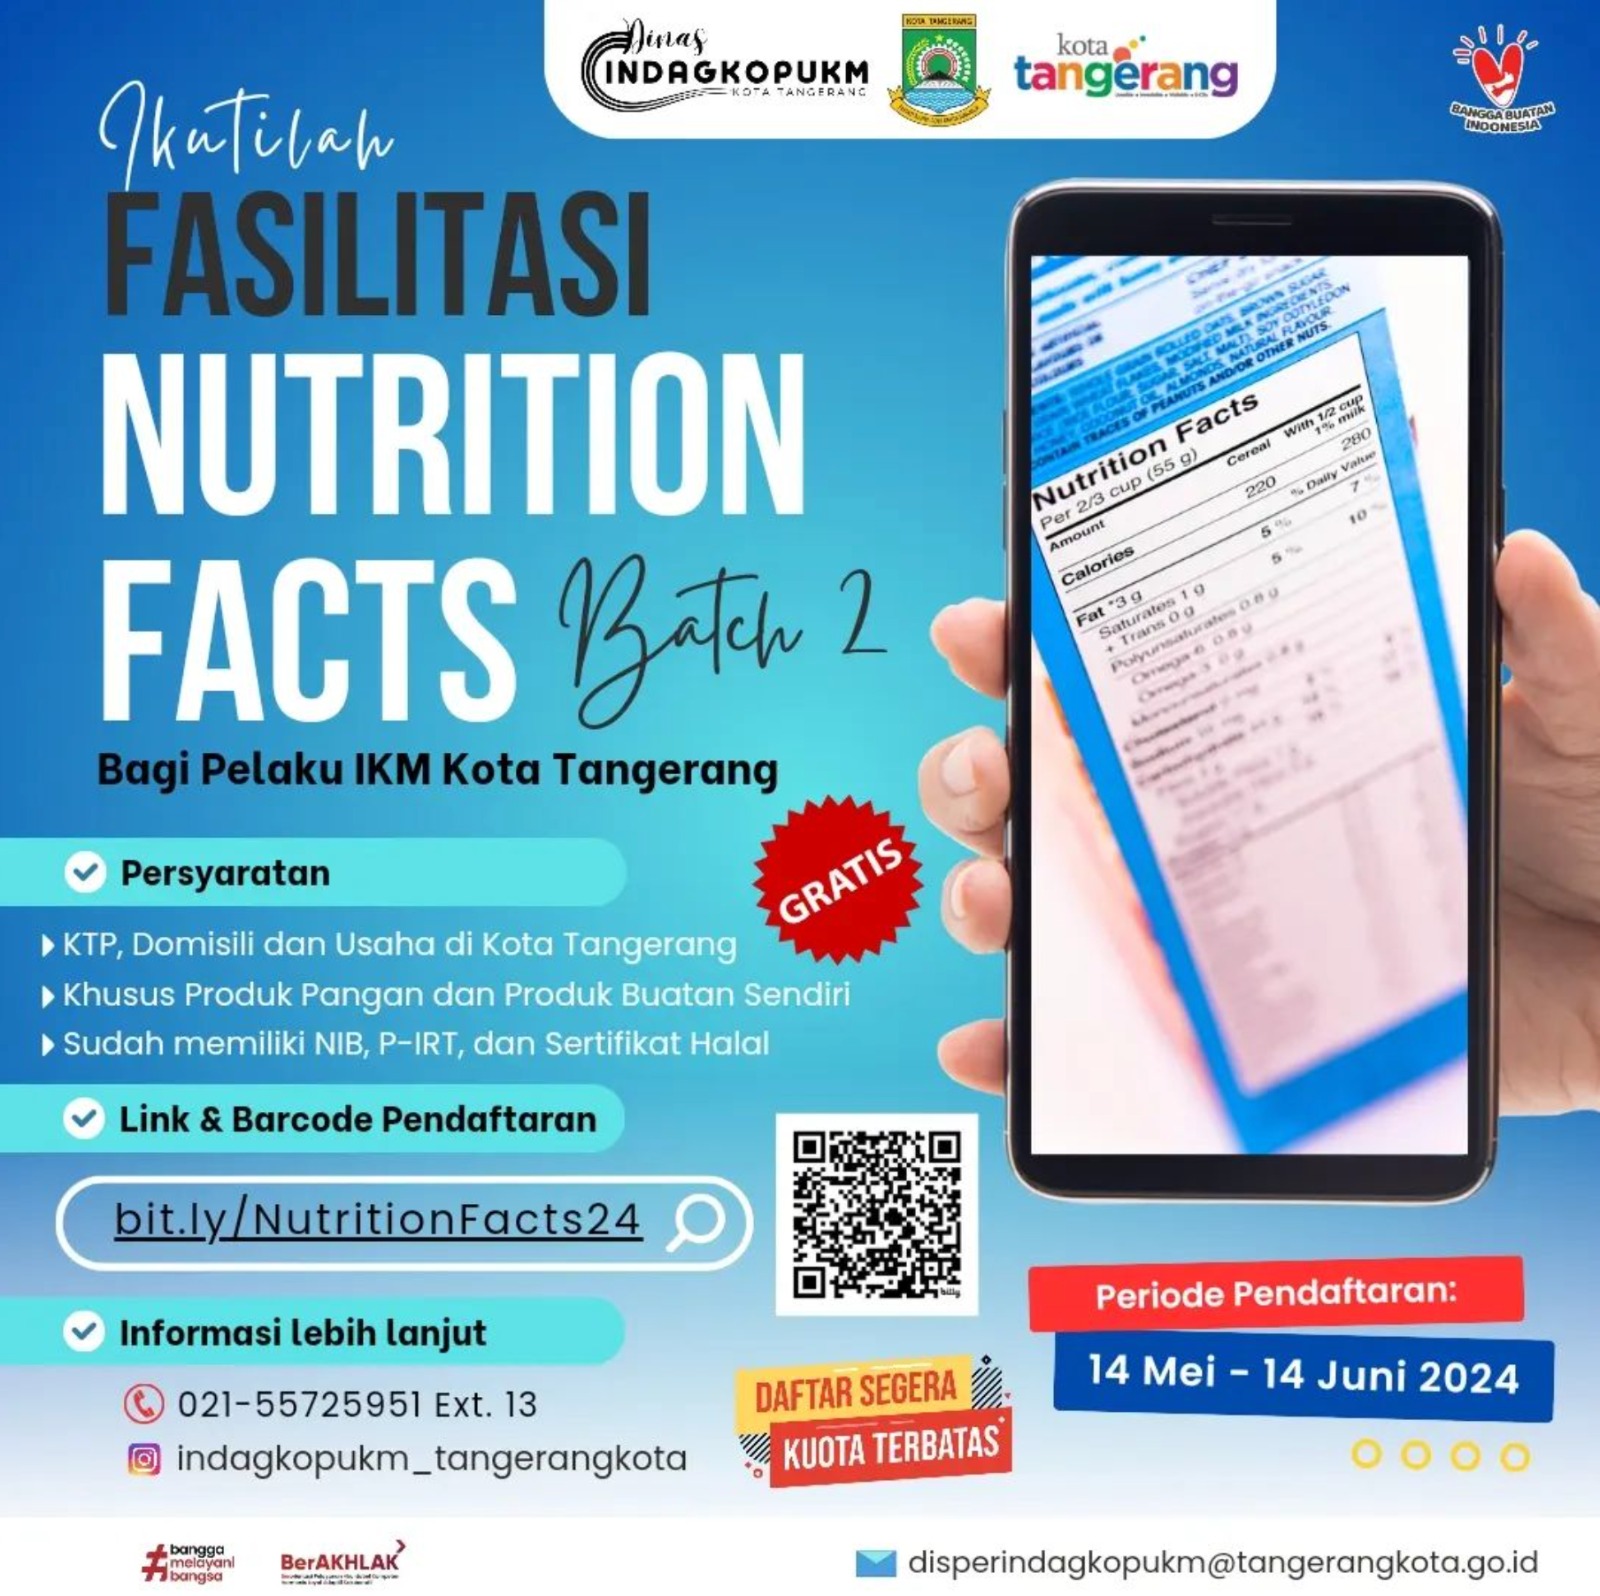 buruan-daftar-pemkot-tangerang-buka-fasilitasi-nutrition-facts-batch-2-secara-gratis